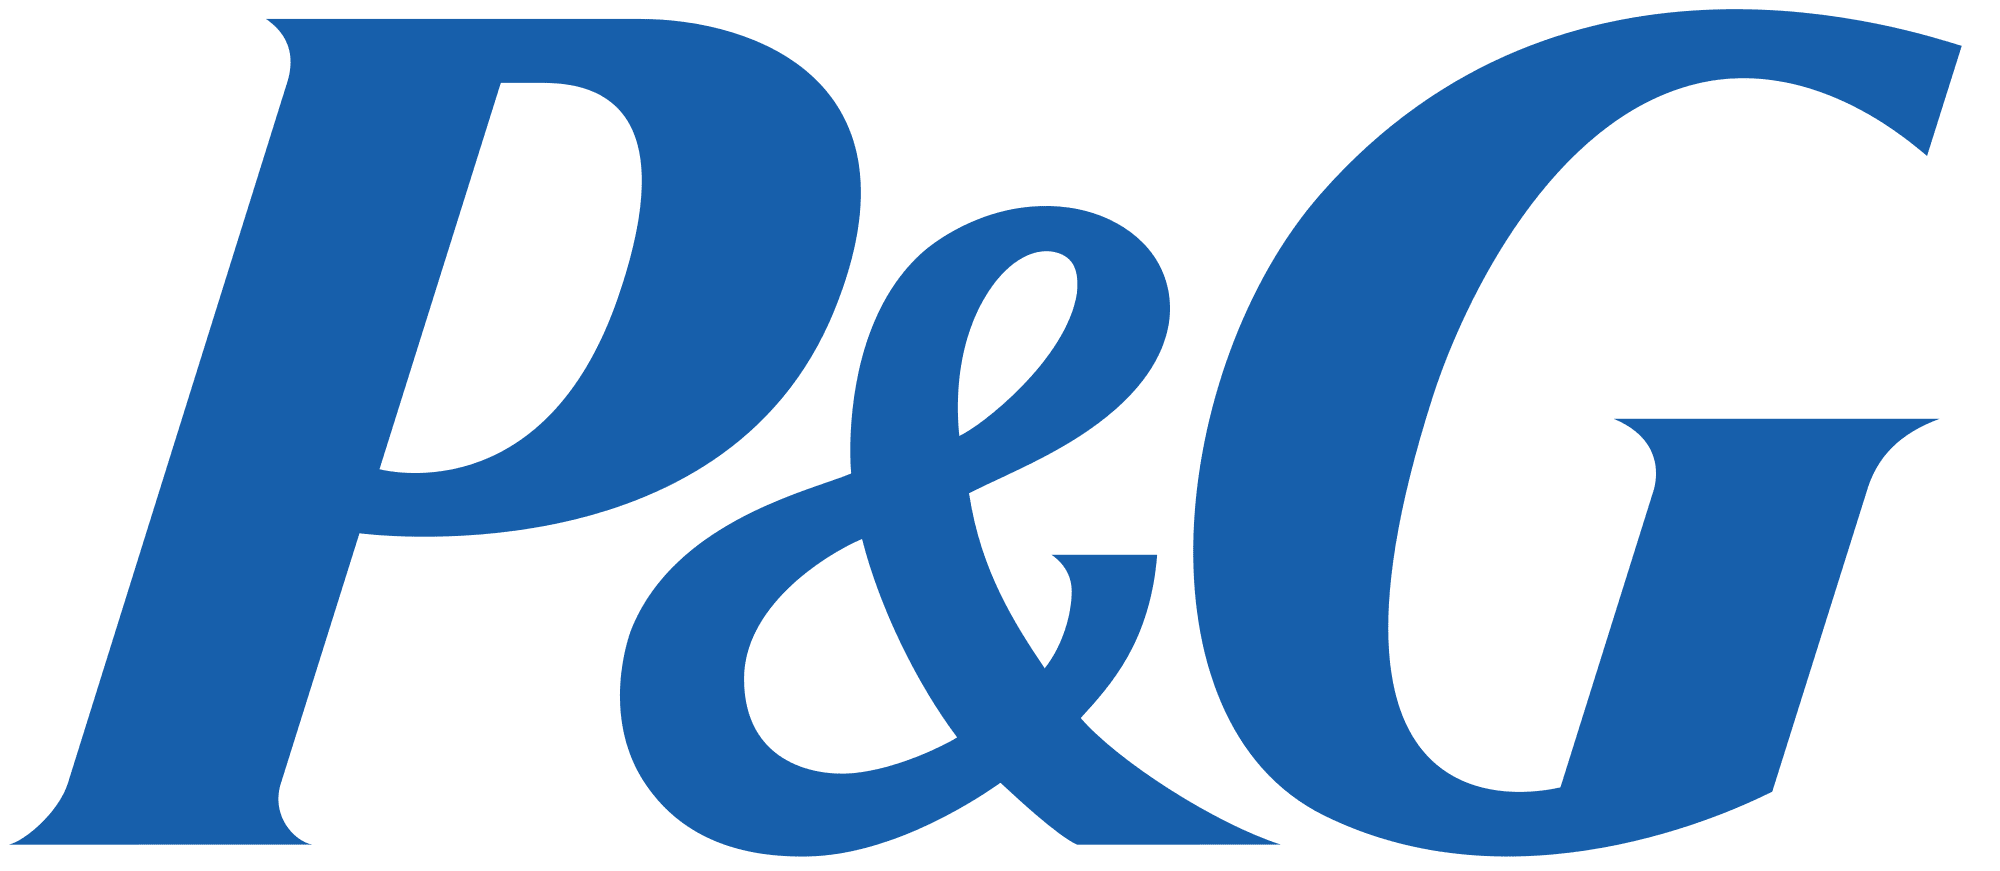 P&G_logo